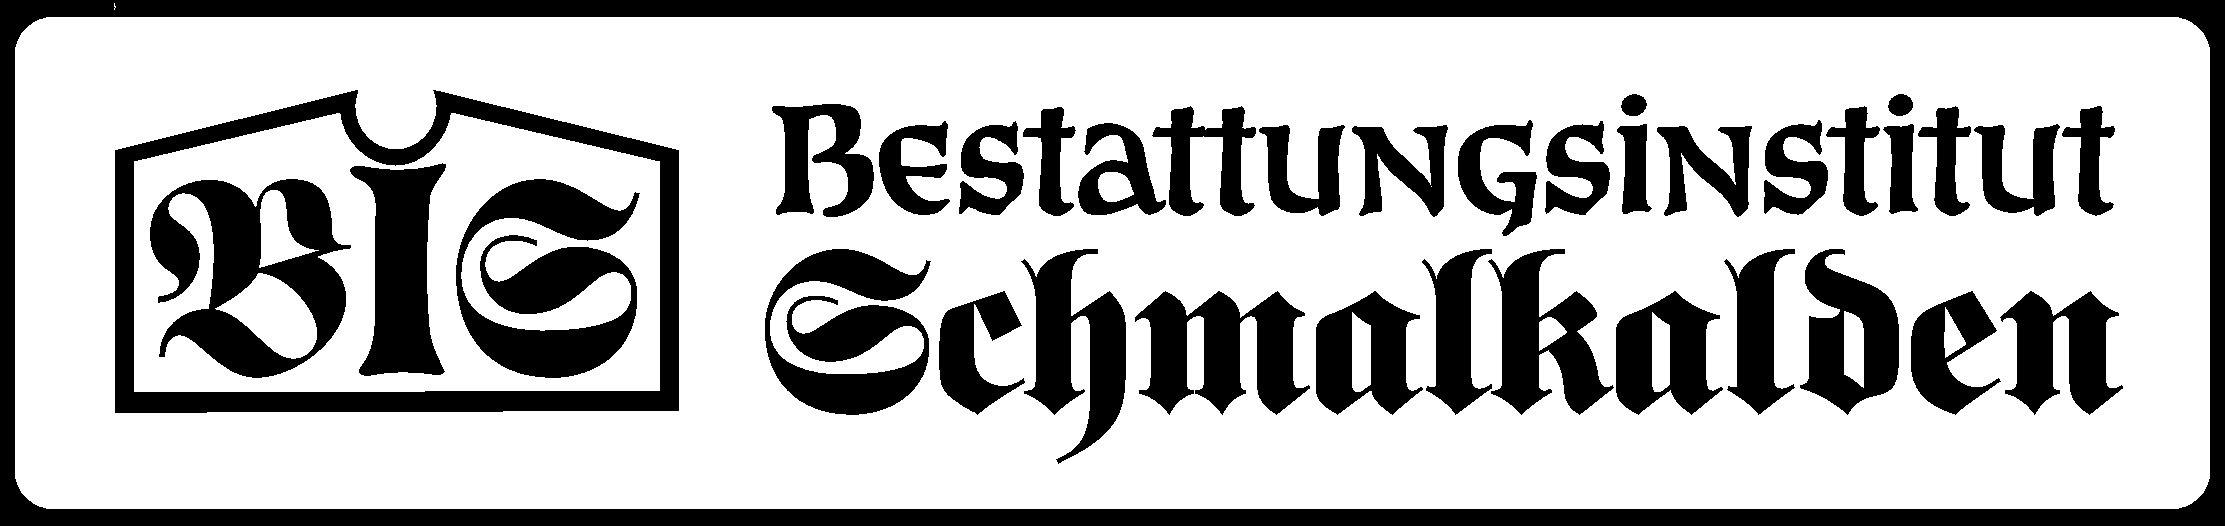 Bestattungen Schmalkalden GmbH